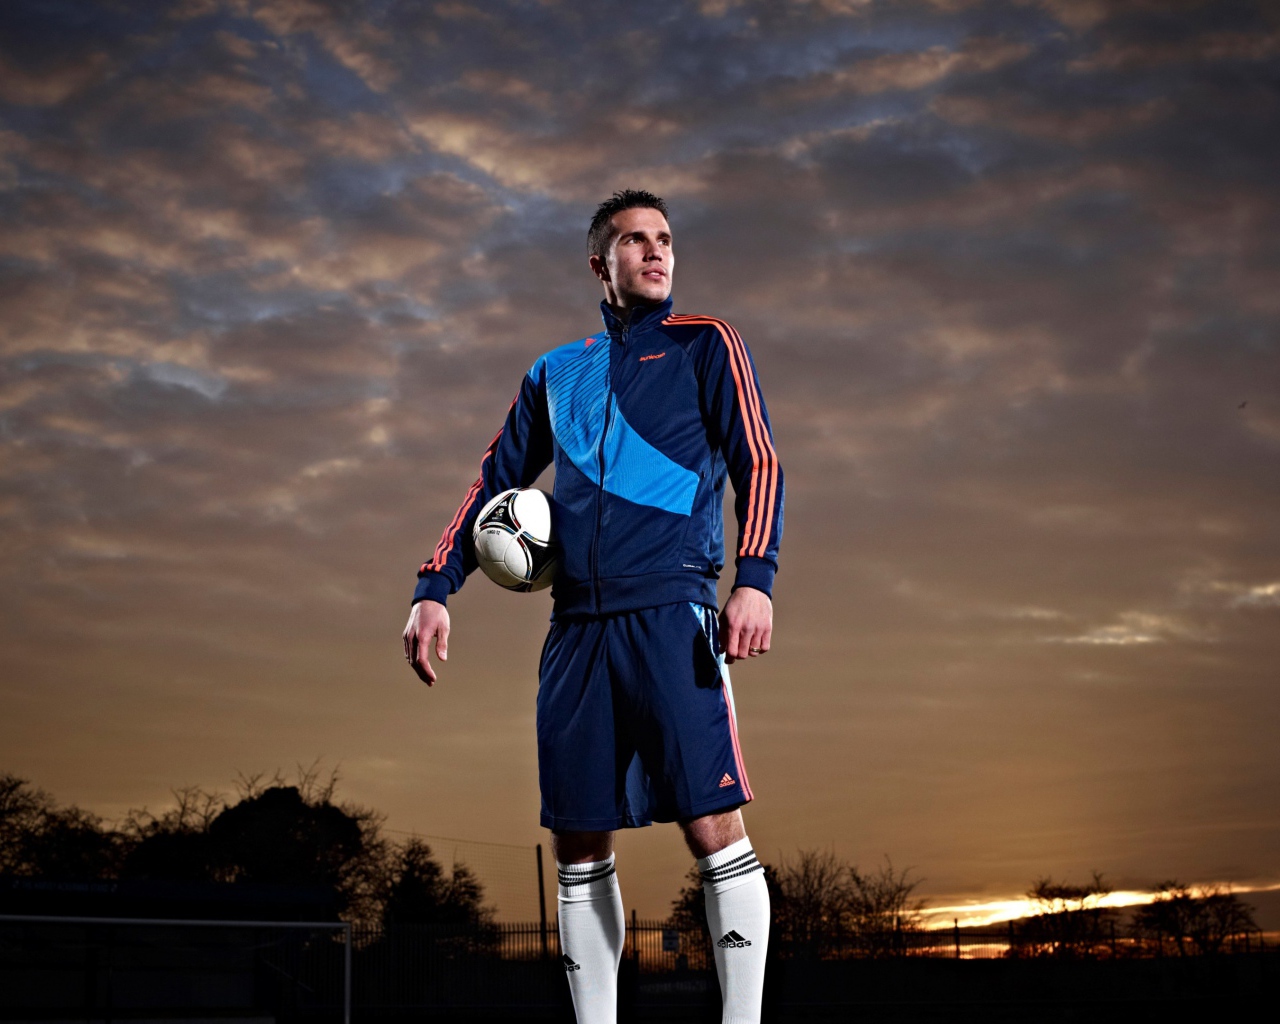 Футболист  Робин ван Перси с мячом на фоне неба